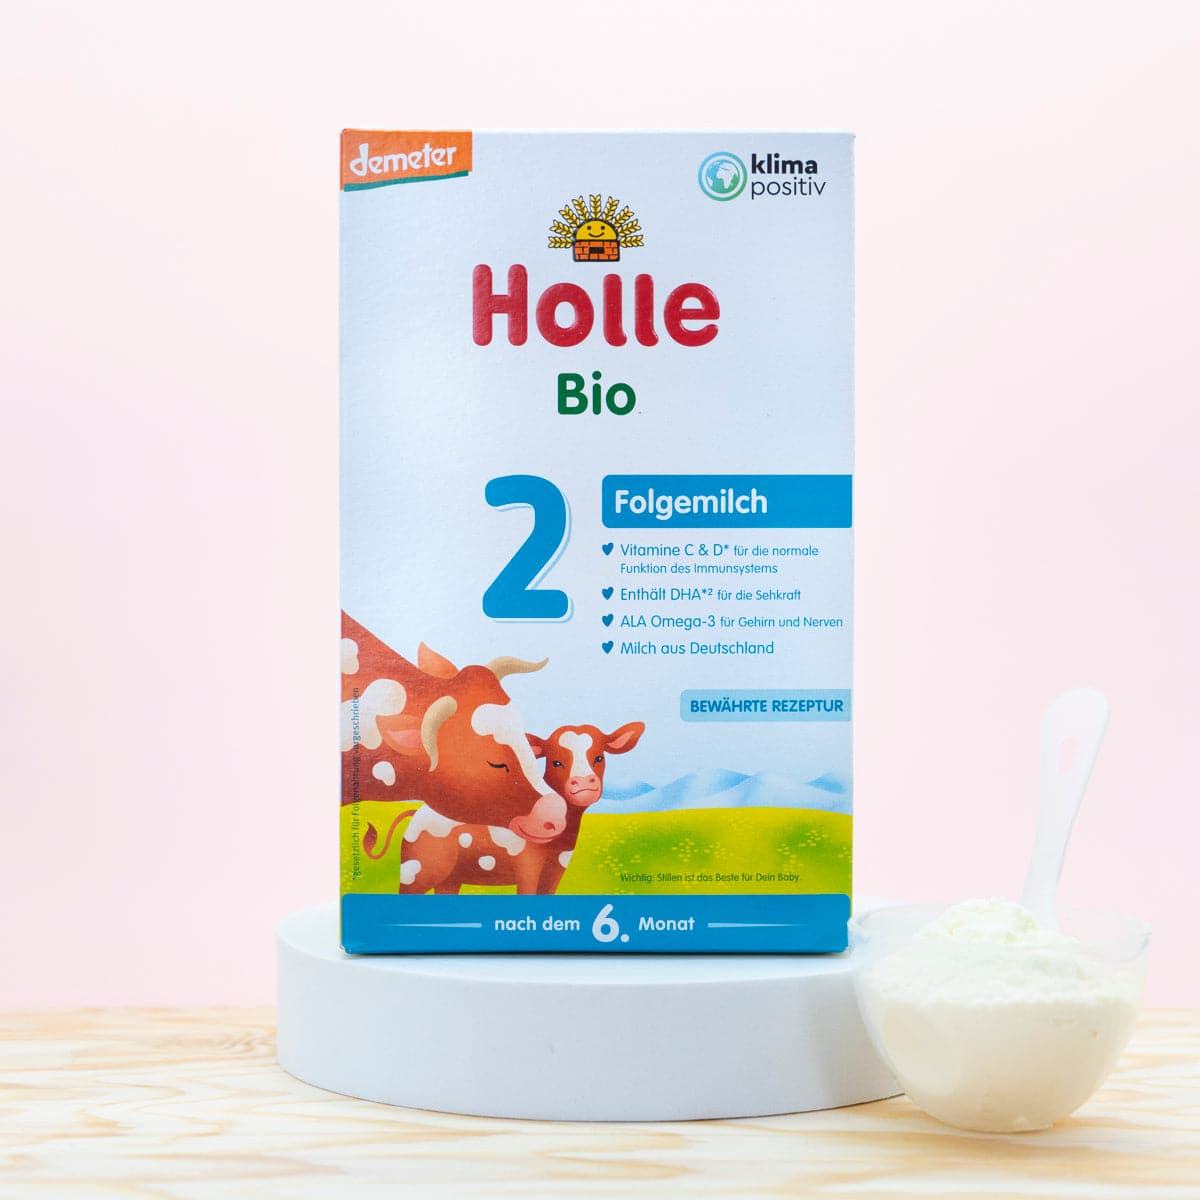 Holle Formula Stage 1 - 0-6 Months (400g) - Baby Milk Bar